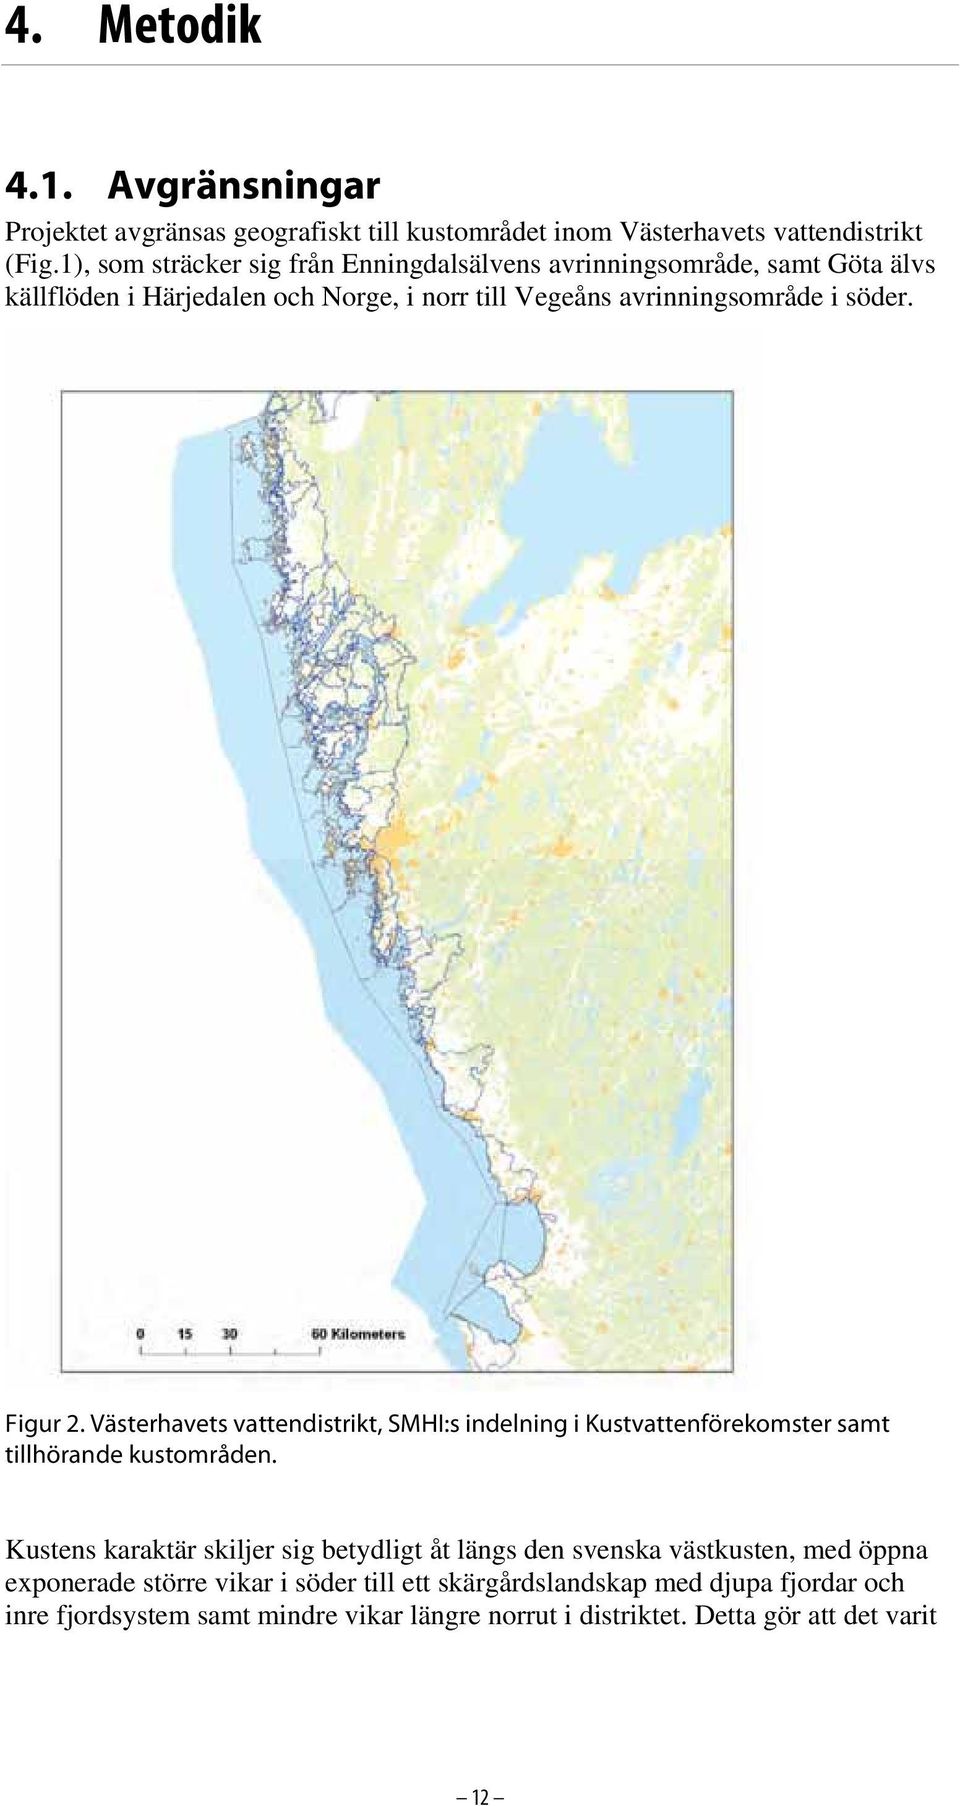 Figur 2. Västerhavets vattendistrikt, SMHI:s indelning i Kustvattenförekomster samt tillhörande kustområden.